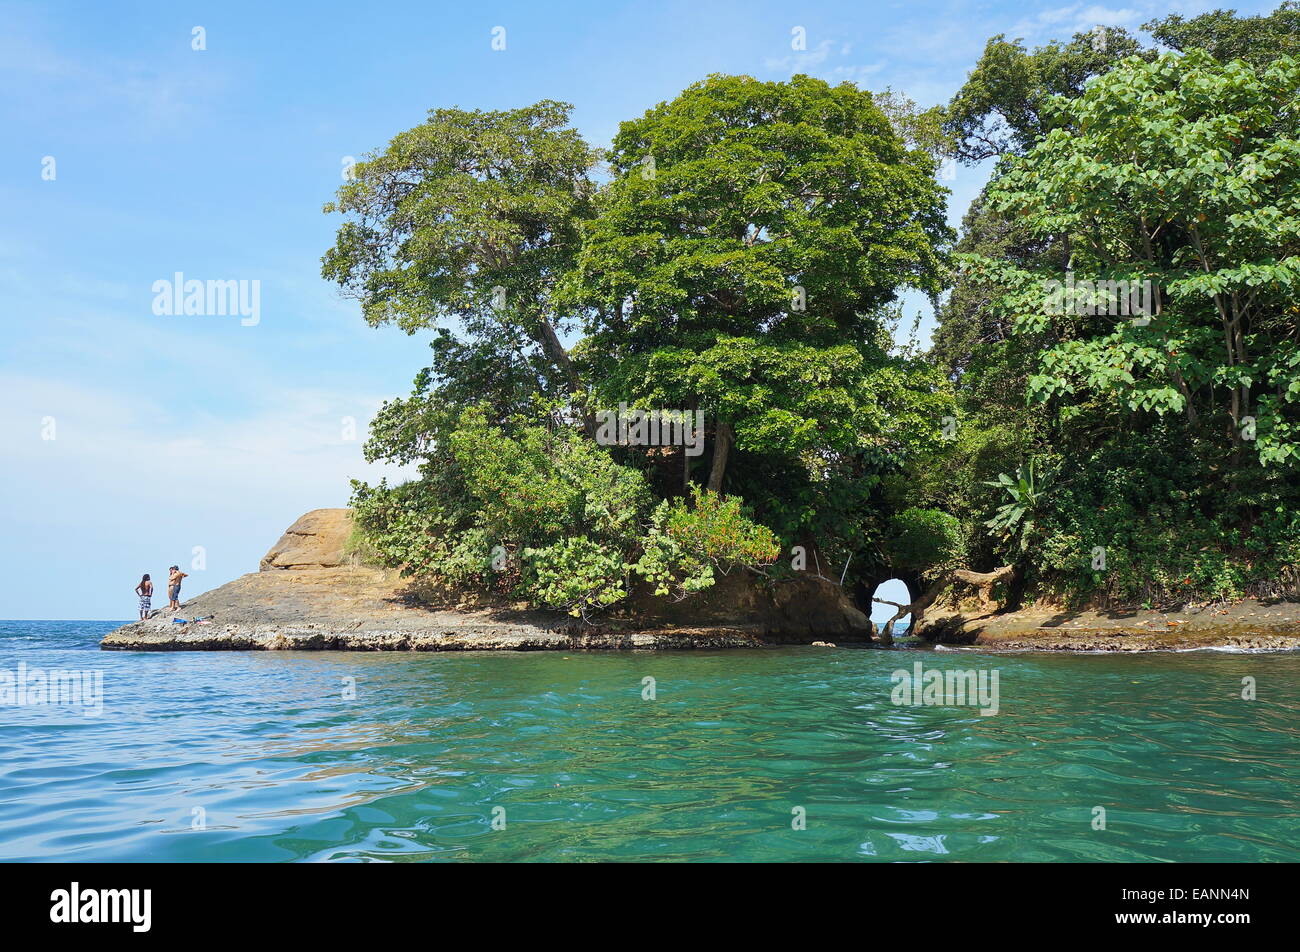 La côte des Caraïbes du Costa Rica avec une grotte naturelle dans la roche et la végétation tropicale luxuriante, Punta Uva, Puerto Viejo Banque D'Images